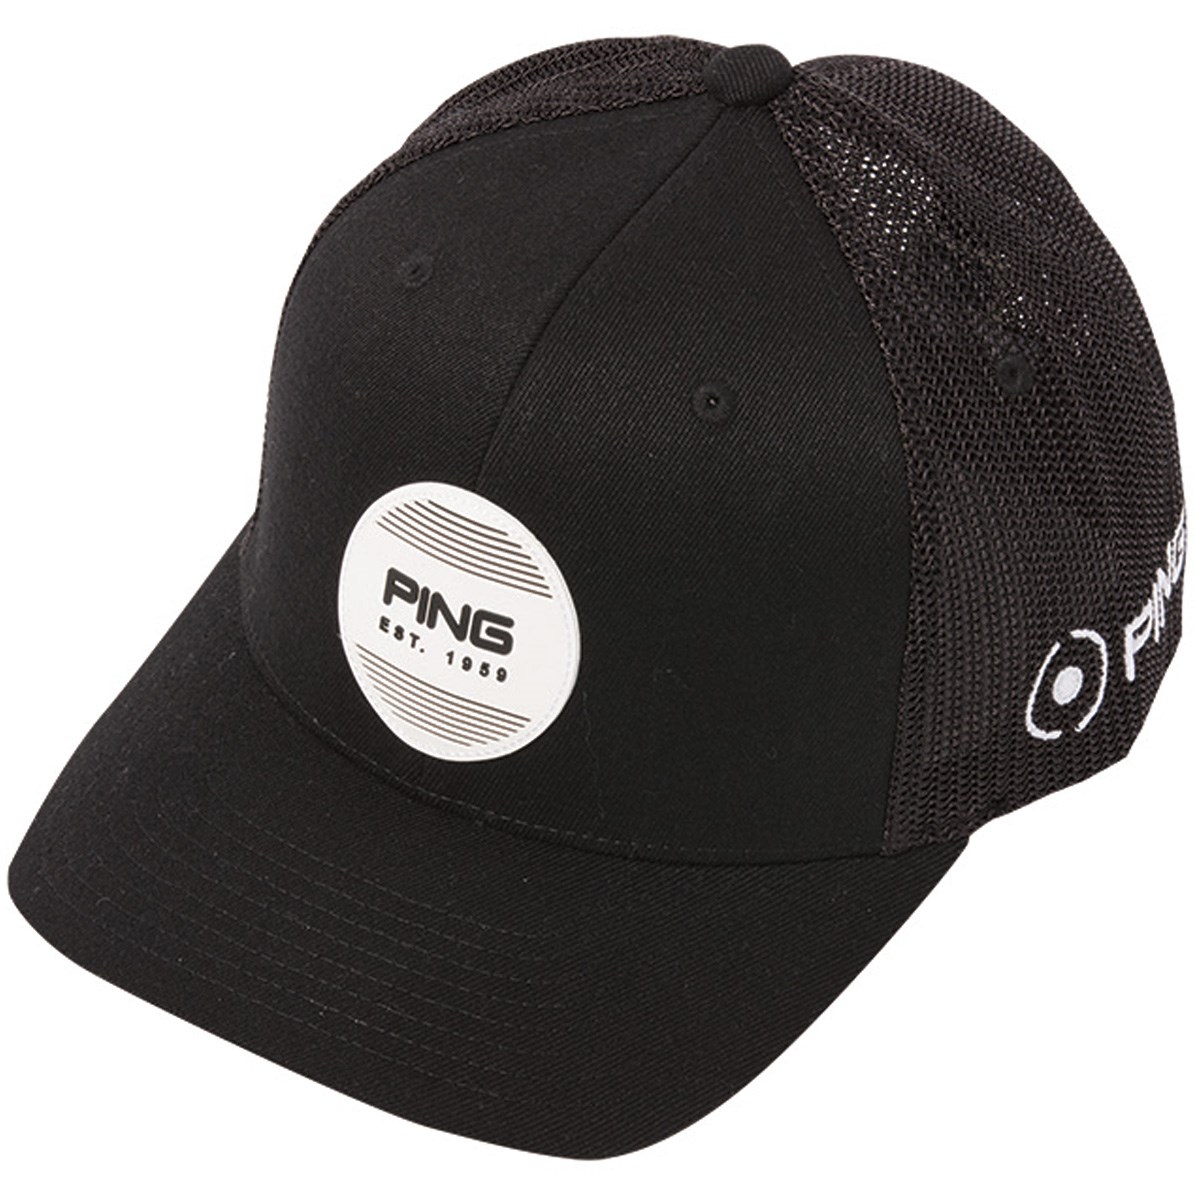  [2018年モデル] ピン ストラクチャー 6パネル フレックス フィット サークルパッチ メッシュキャップ ゴルフウェア 帽子